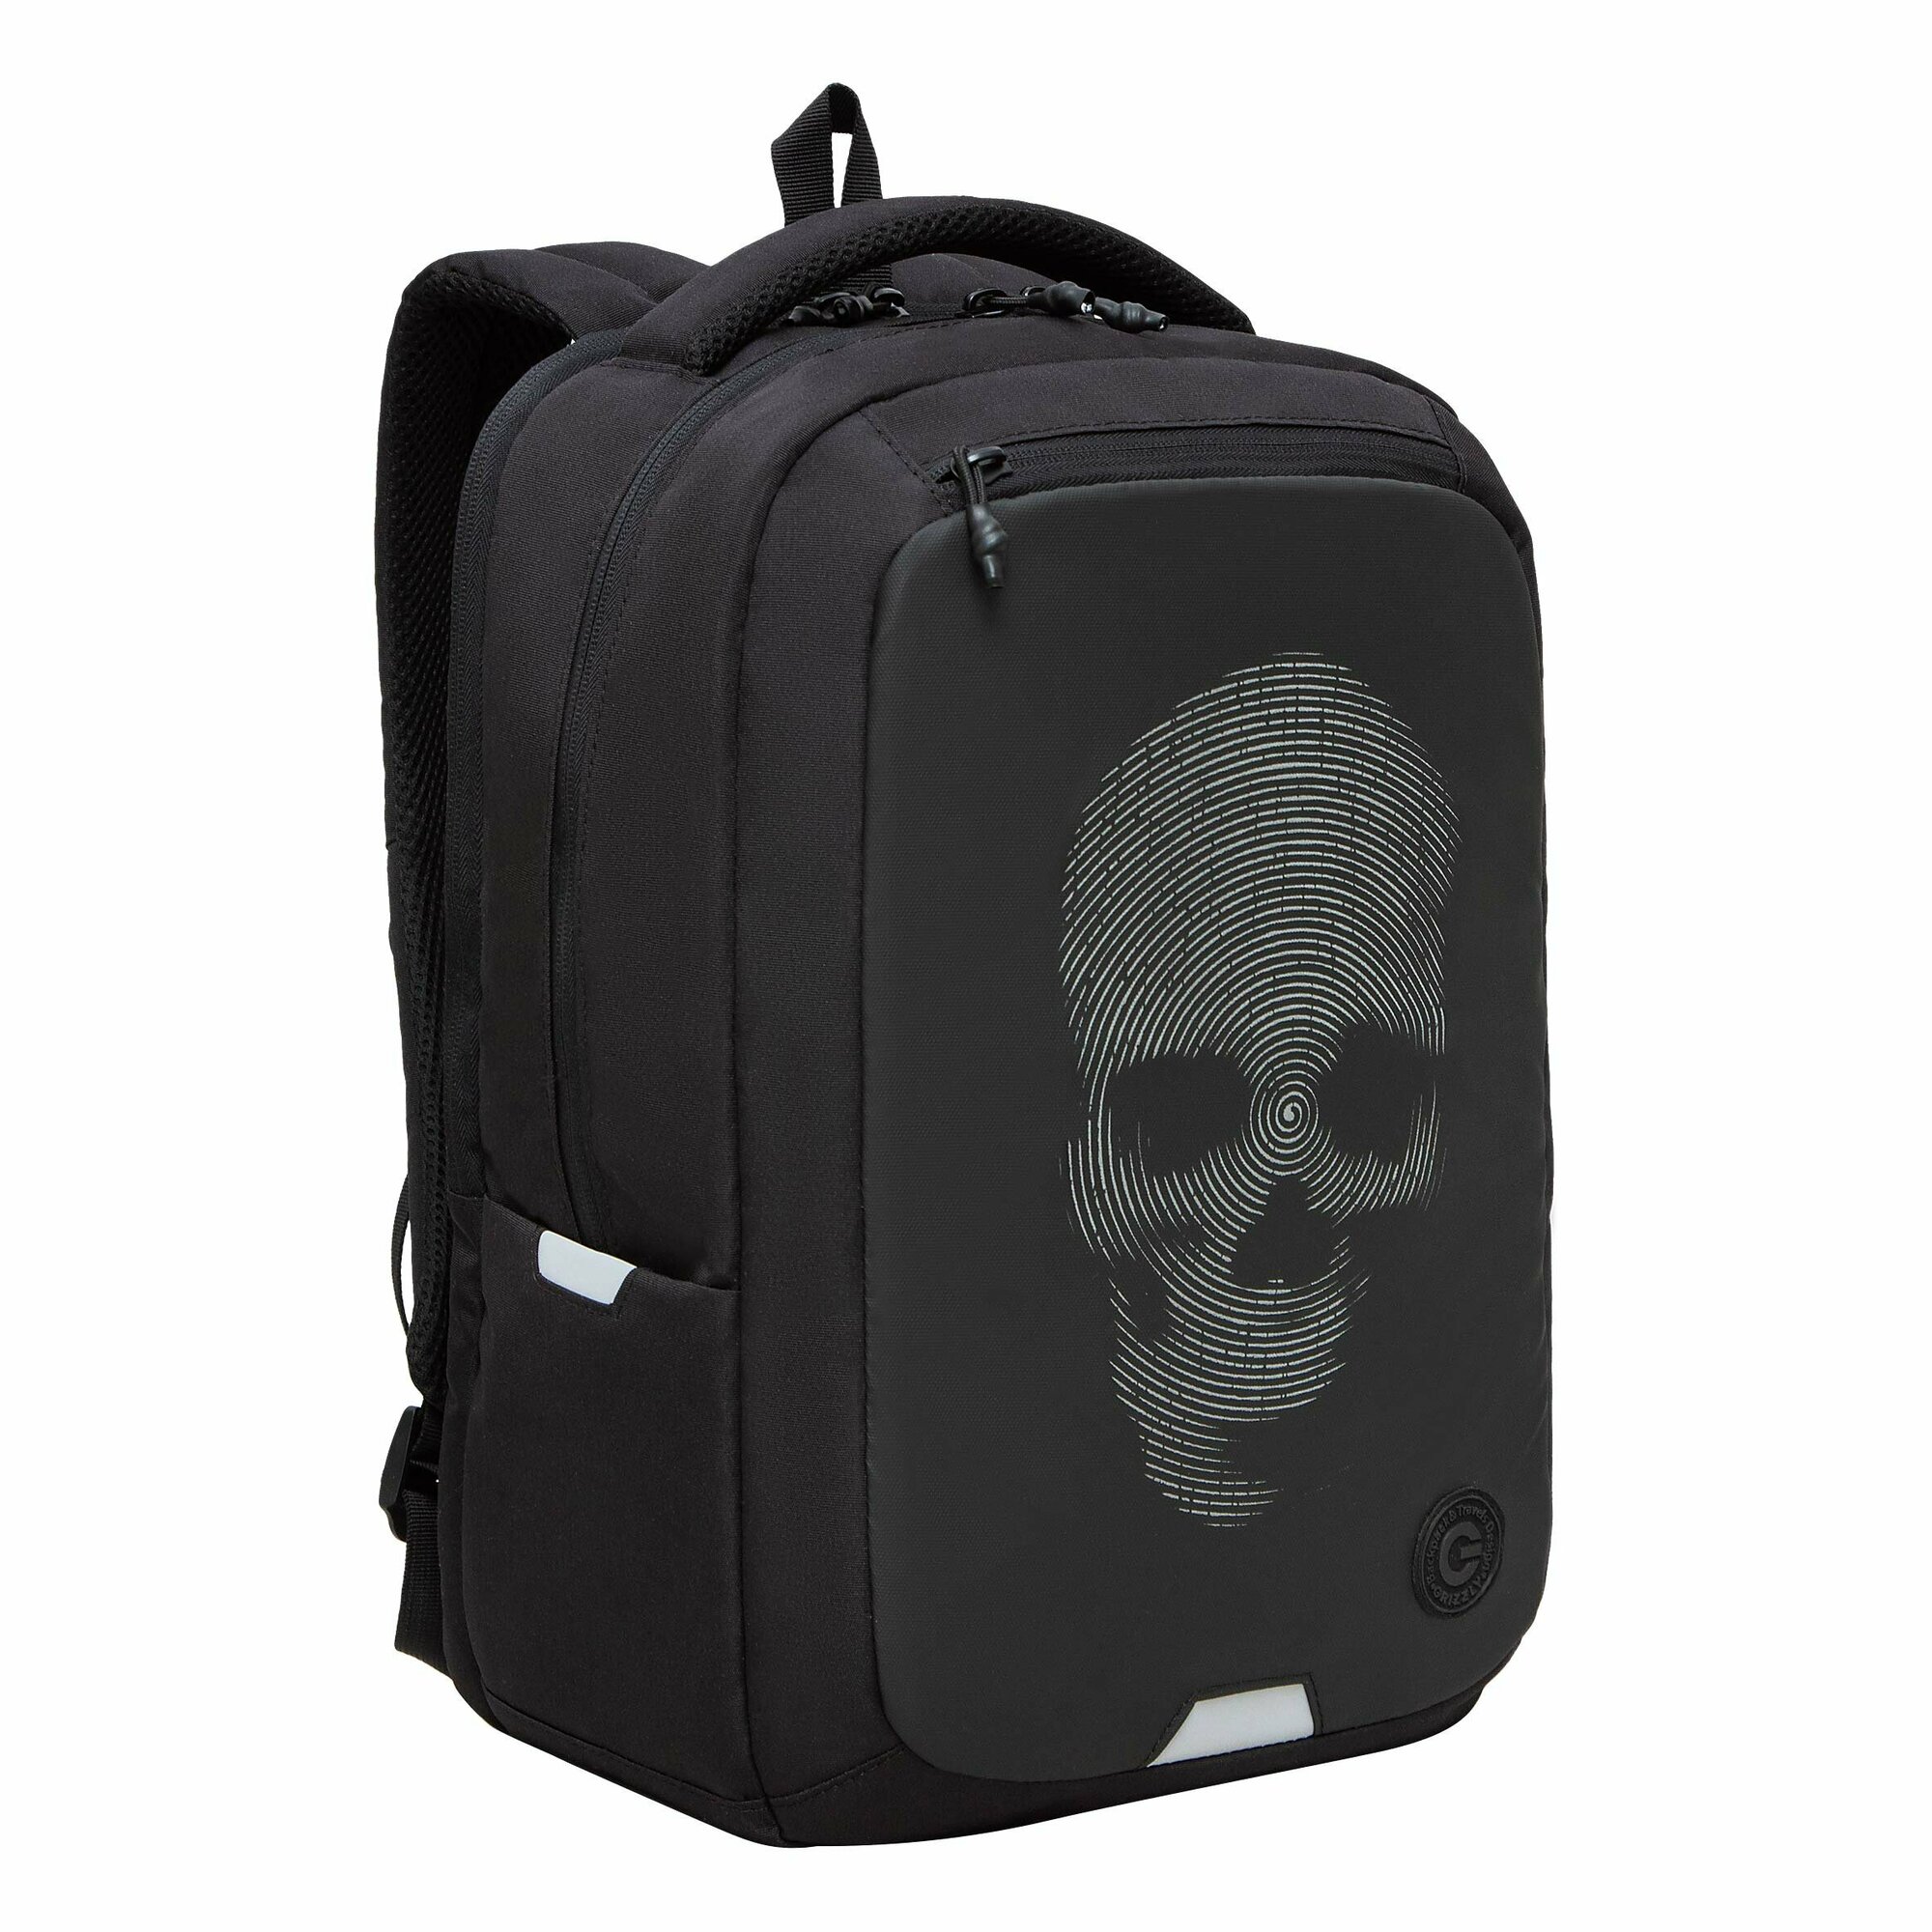 Рюкзак молодежный GRIZZLY с отделением для ноутбука 15", анатомической спинкой, для мальчика, мужской RU-434-2/2